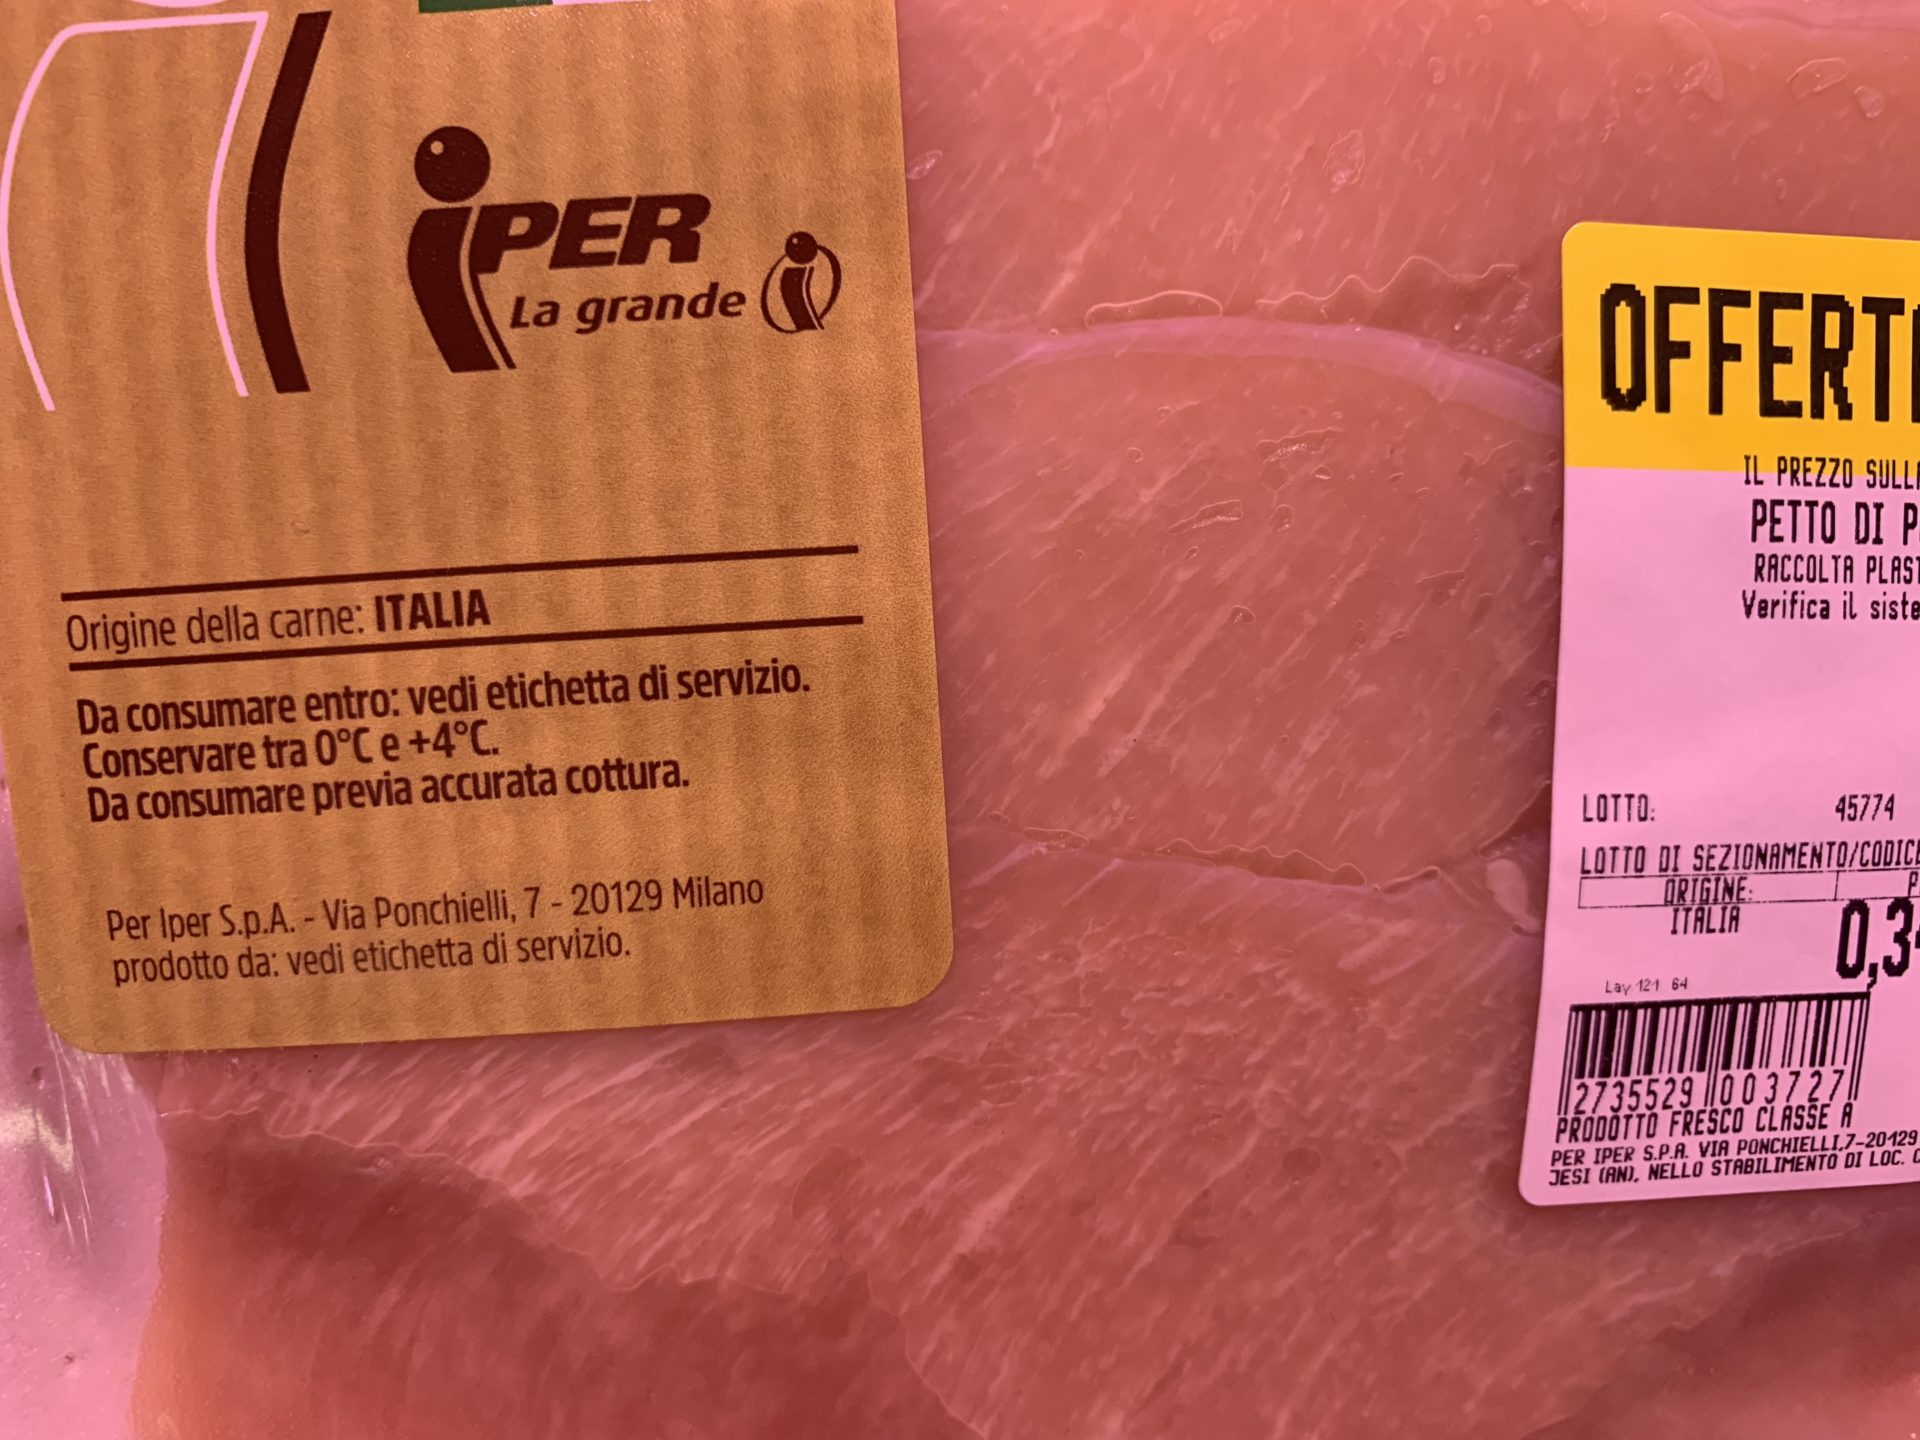 Petti di pollo marchiati Iper forniti dalla società Canrj società cooperativa  agricola di Jesi che fa capo al gruppo Fileni 